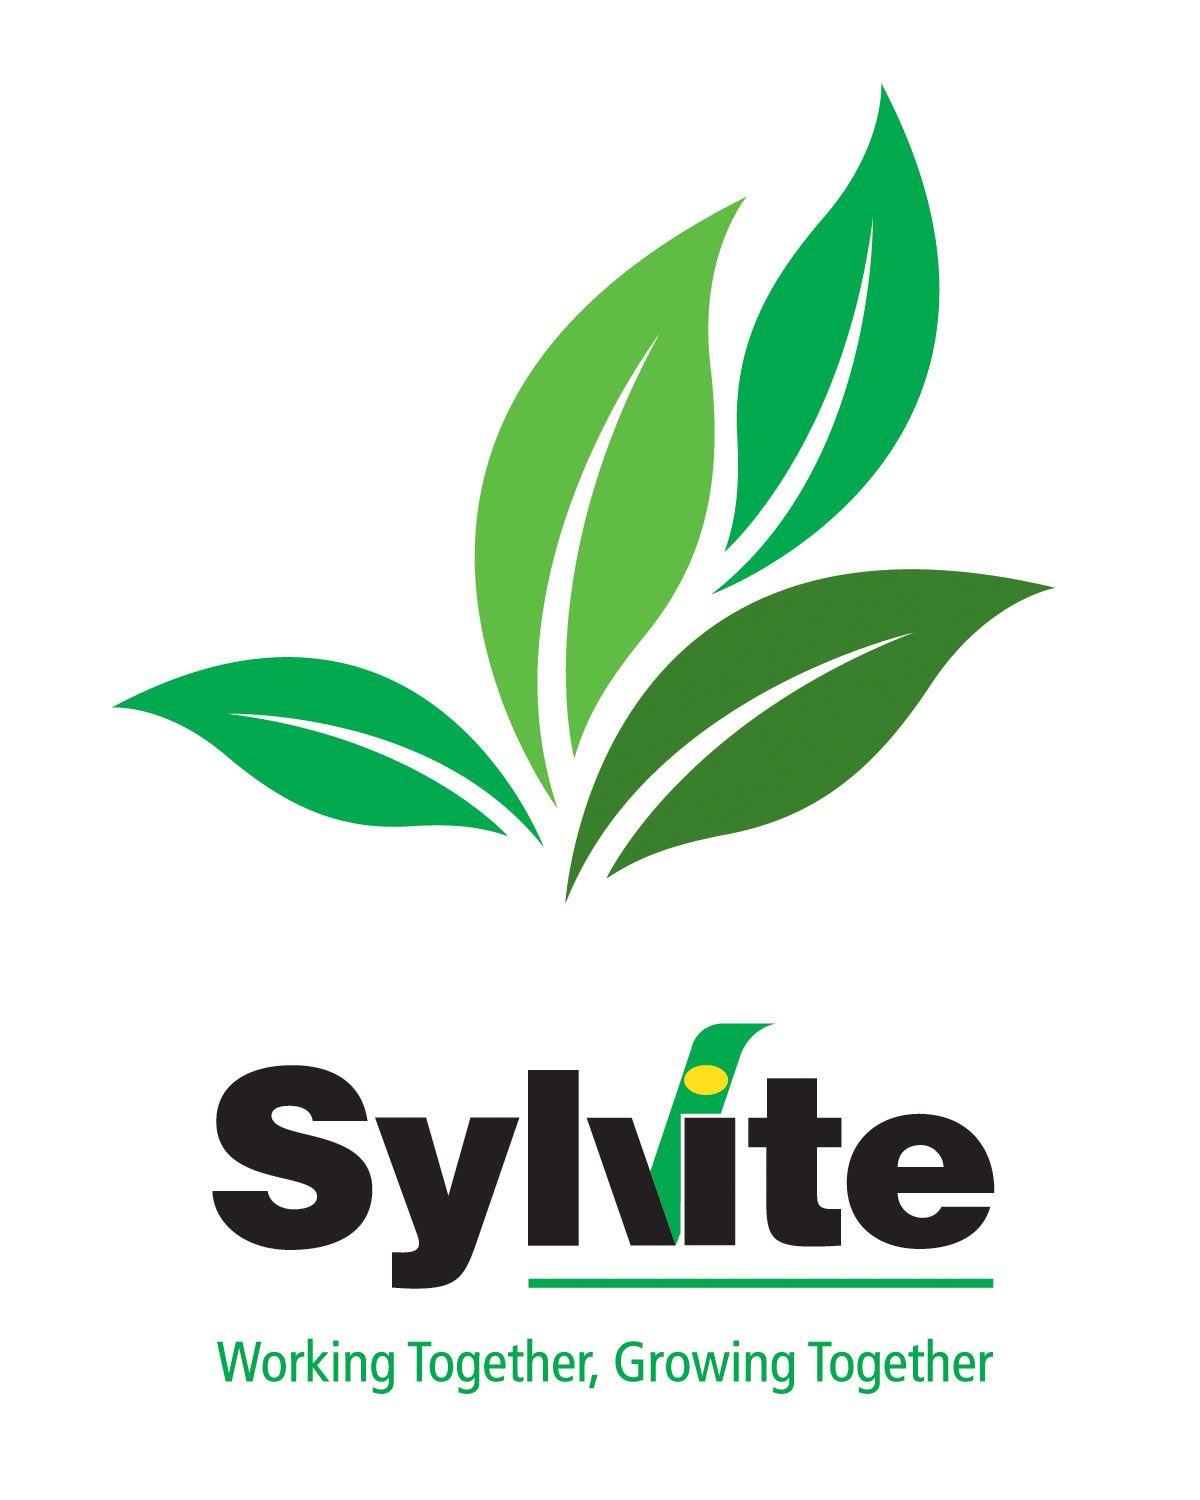 White Leaf Logo - Sylvite Logo (leaves) on white RGB | Golden Horseshoe Soil & Crop ...